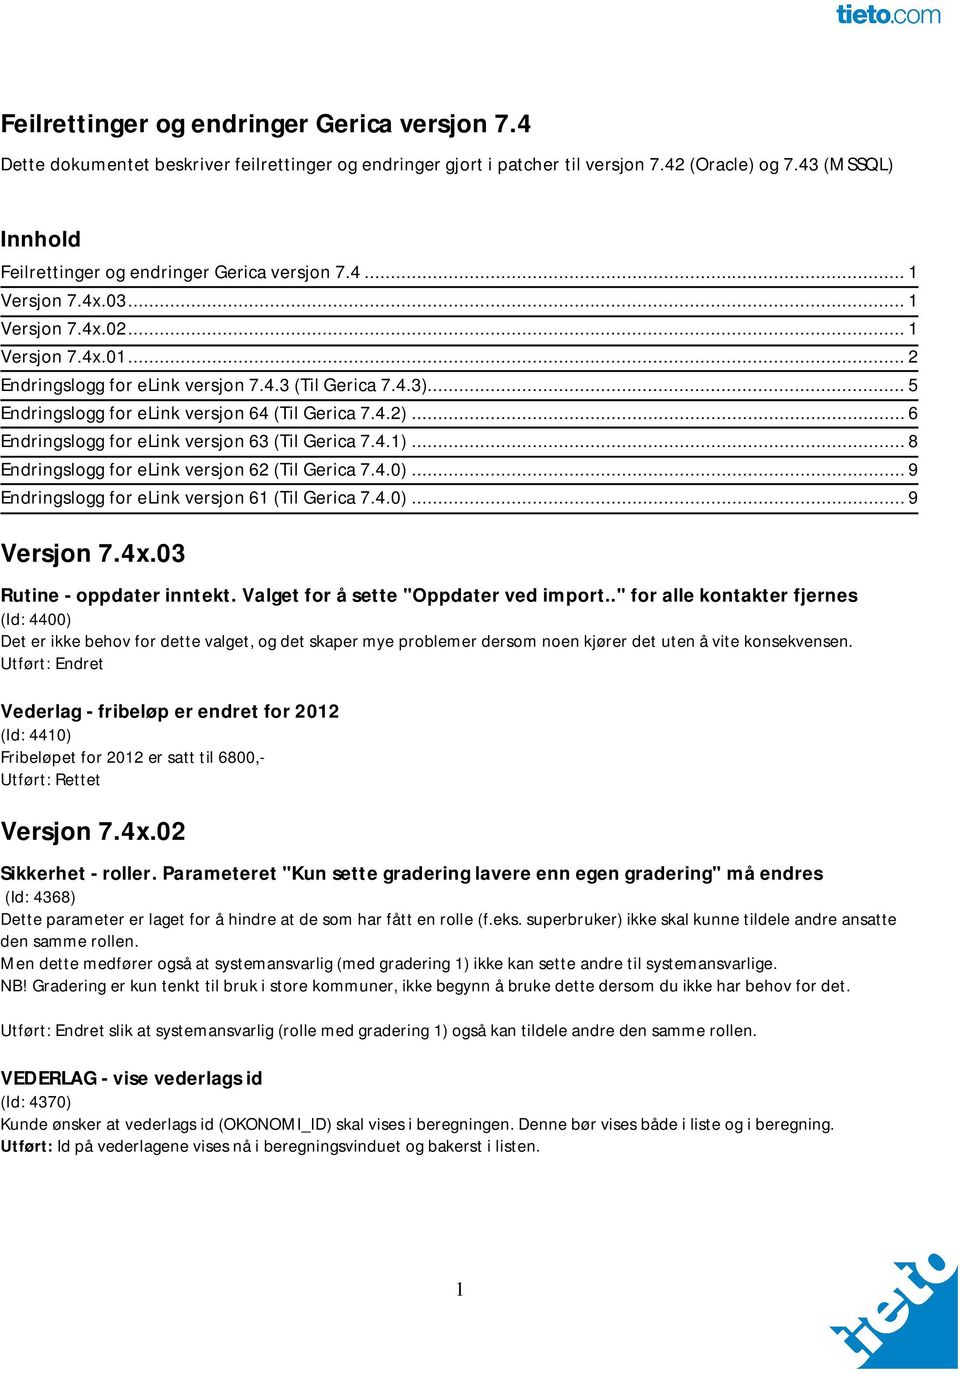 .. 5 Endringslogg for elink versjon 64 (Til Gerica 7.4.2)... 6 Endringslogg for elink versjon 63 (Til Gerica 7.4.1)... 8 Endringslogg for elink versjon 62 (Til Gerica 7.4.0).